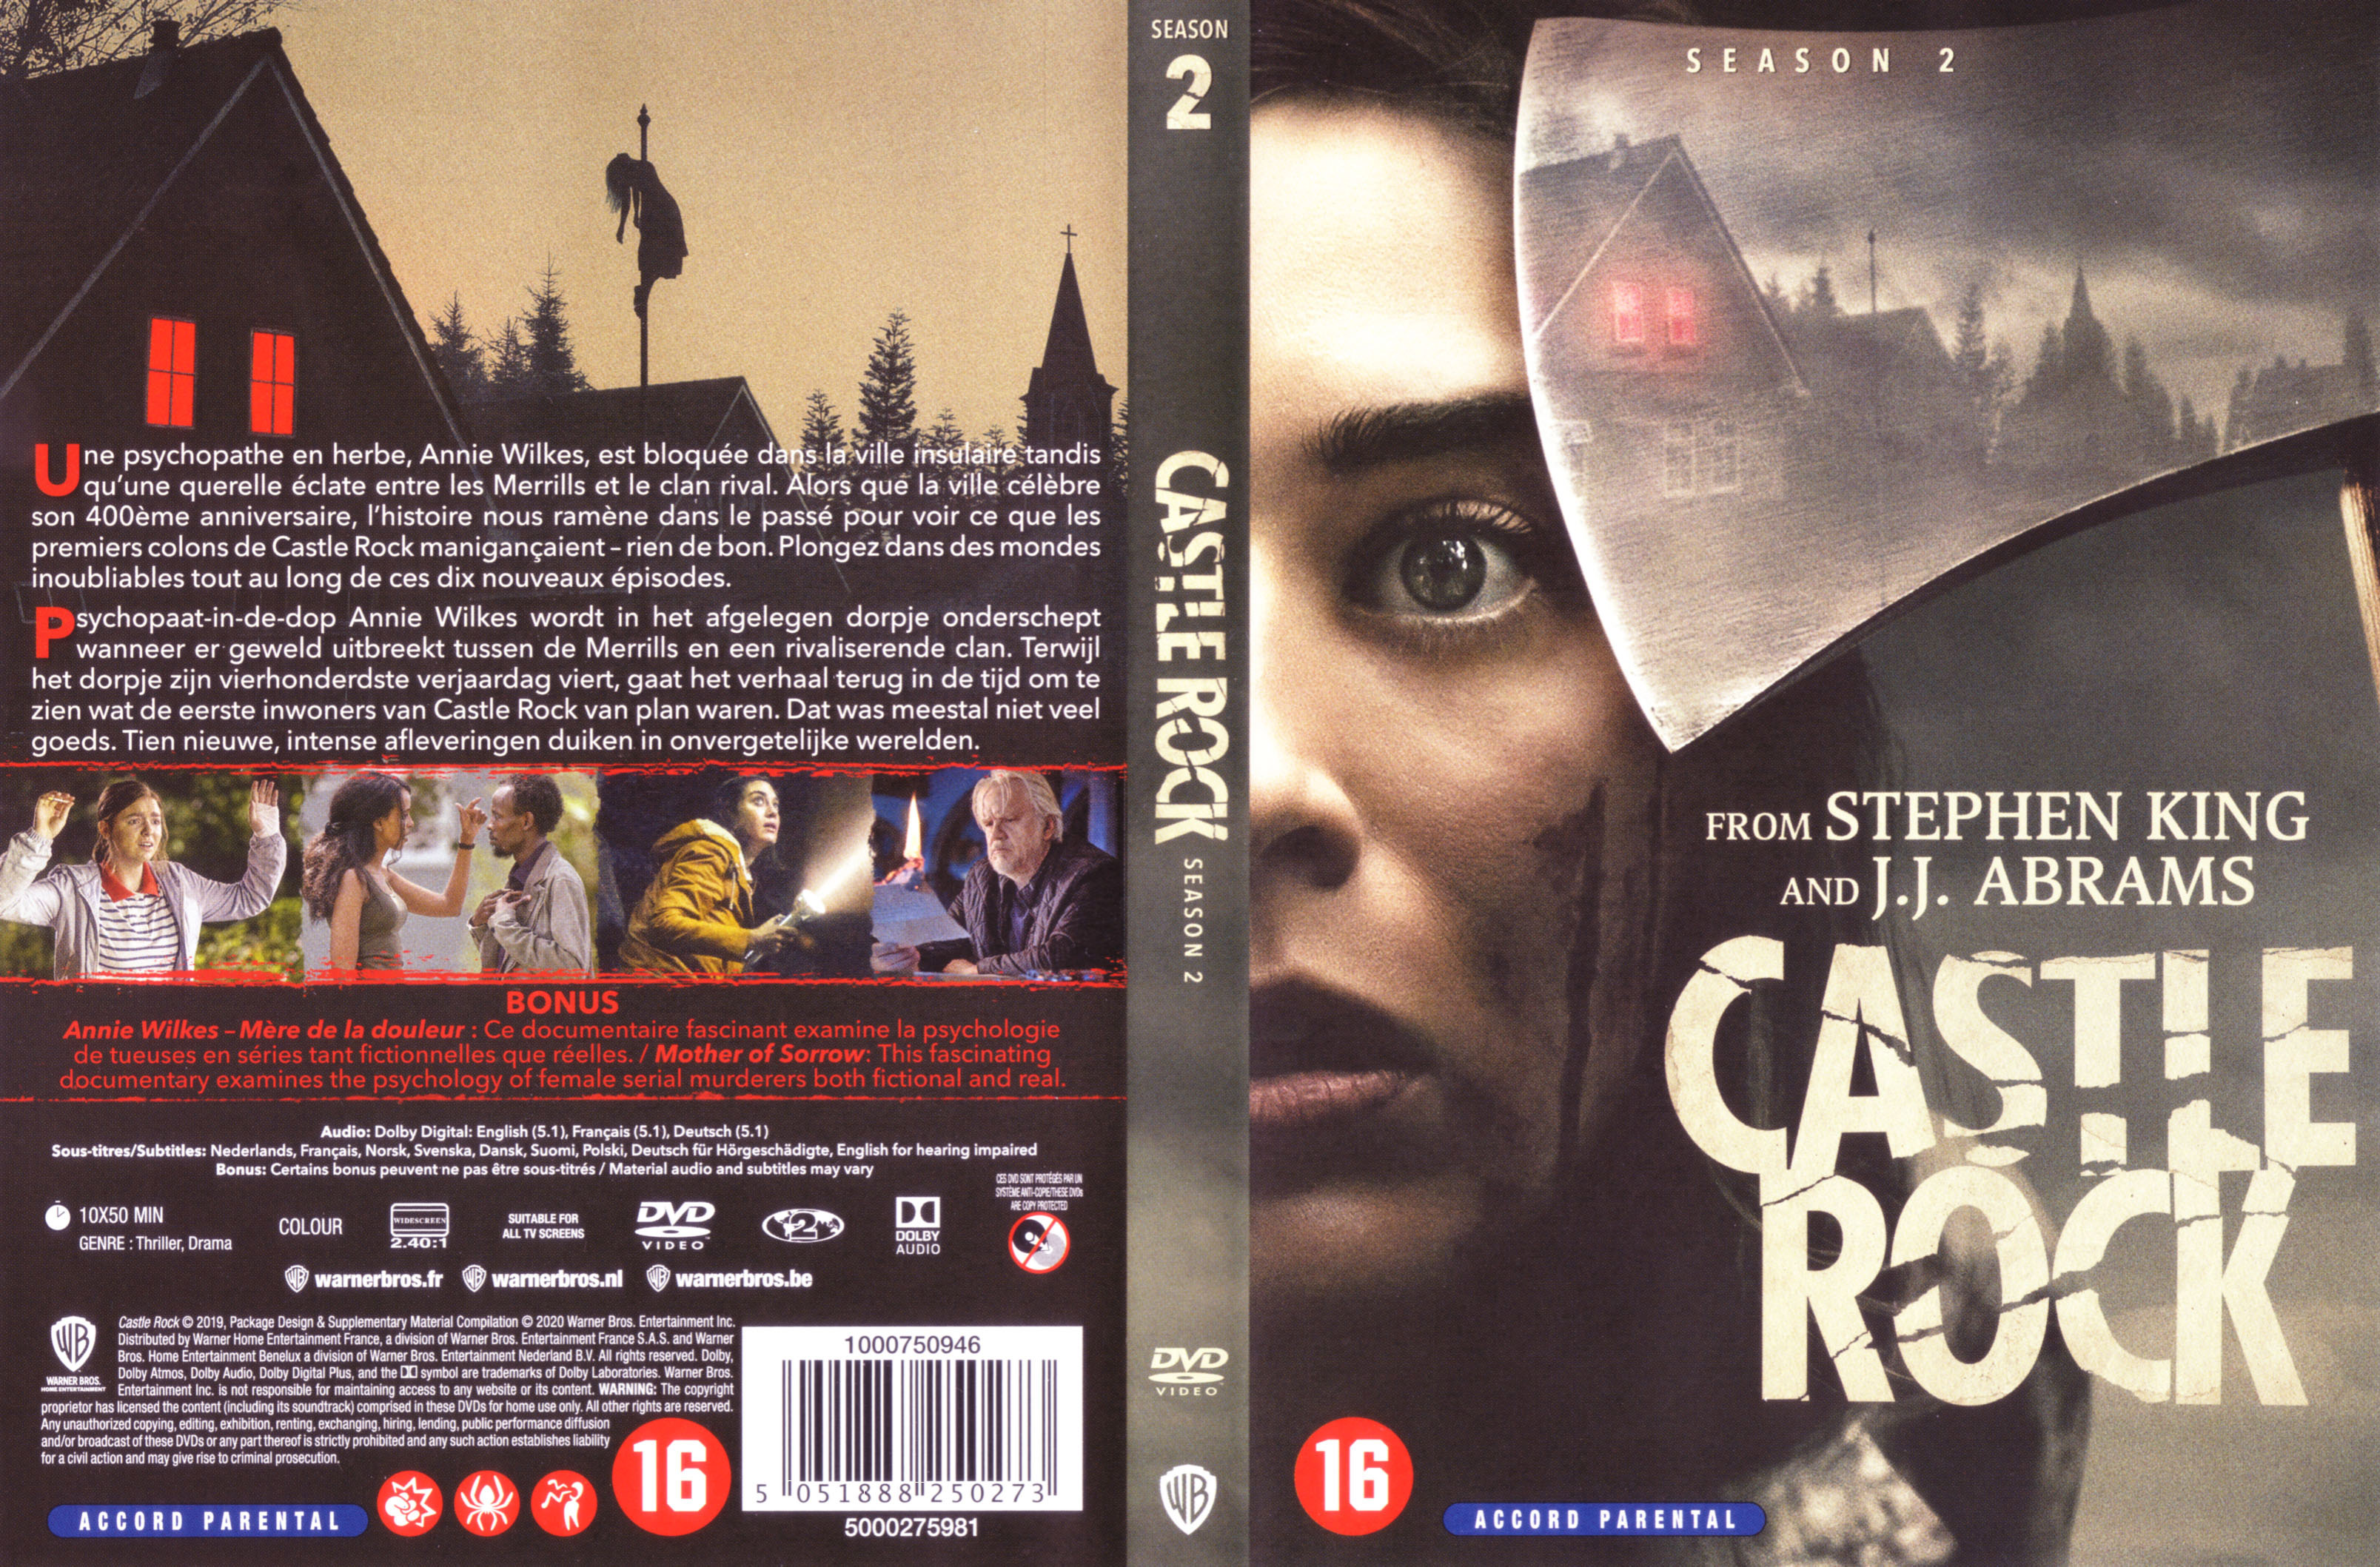 Jaquette DVD Castle Rock saison 2